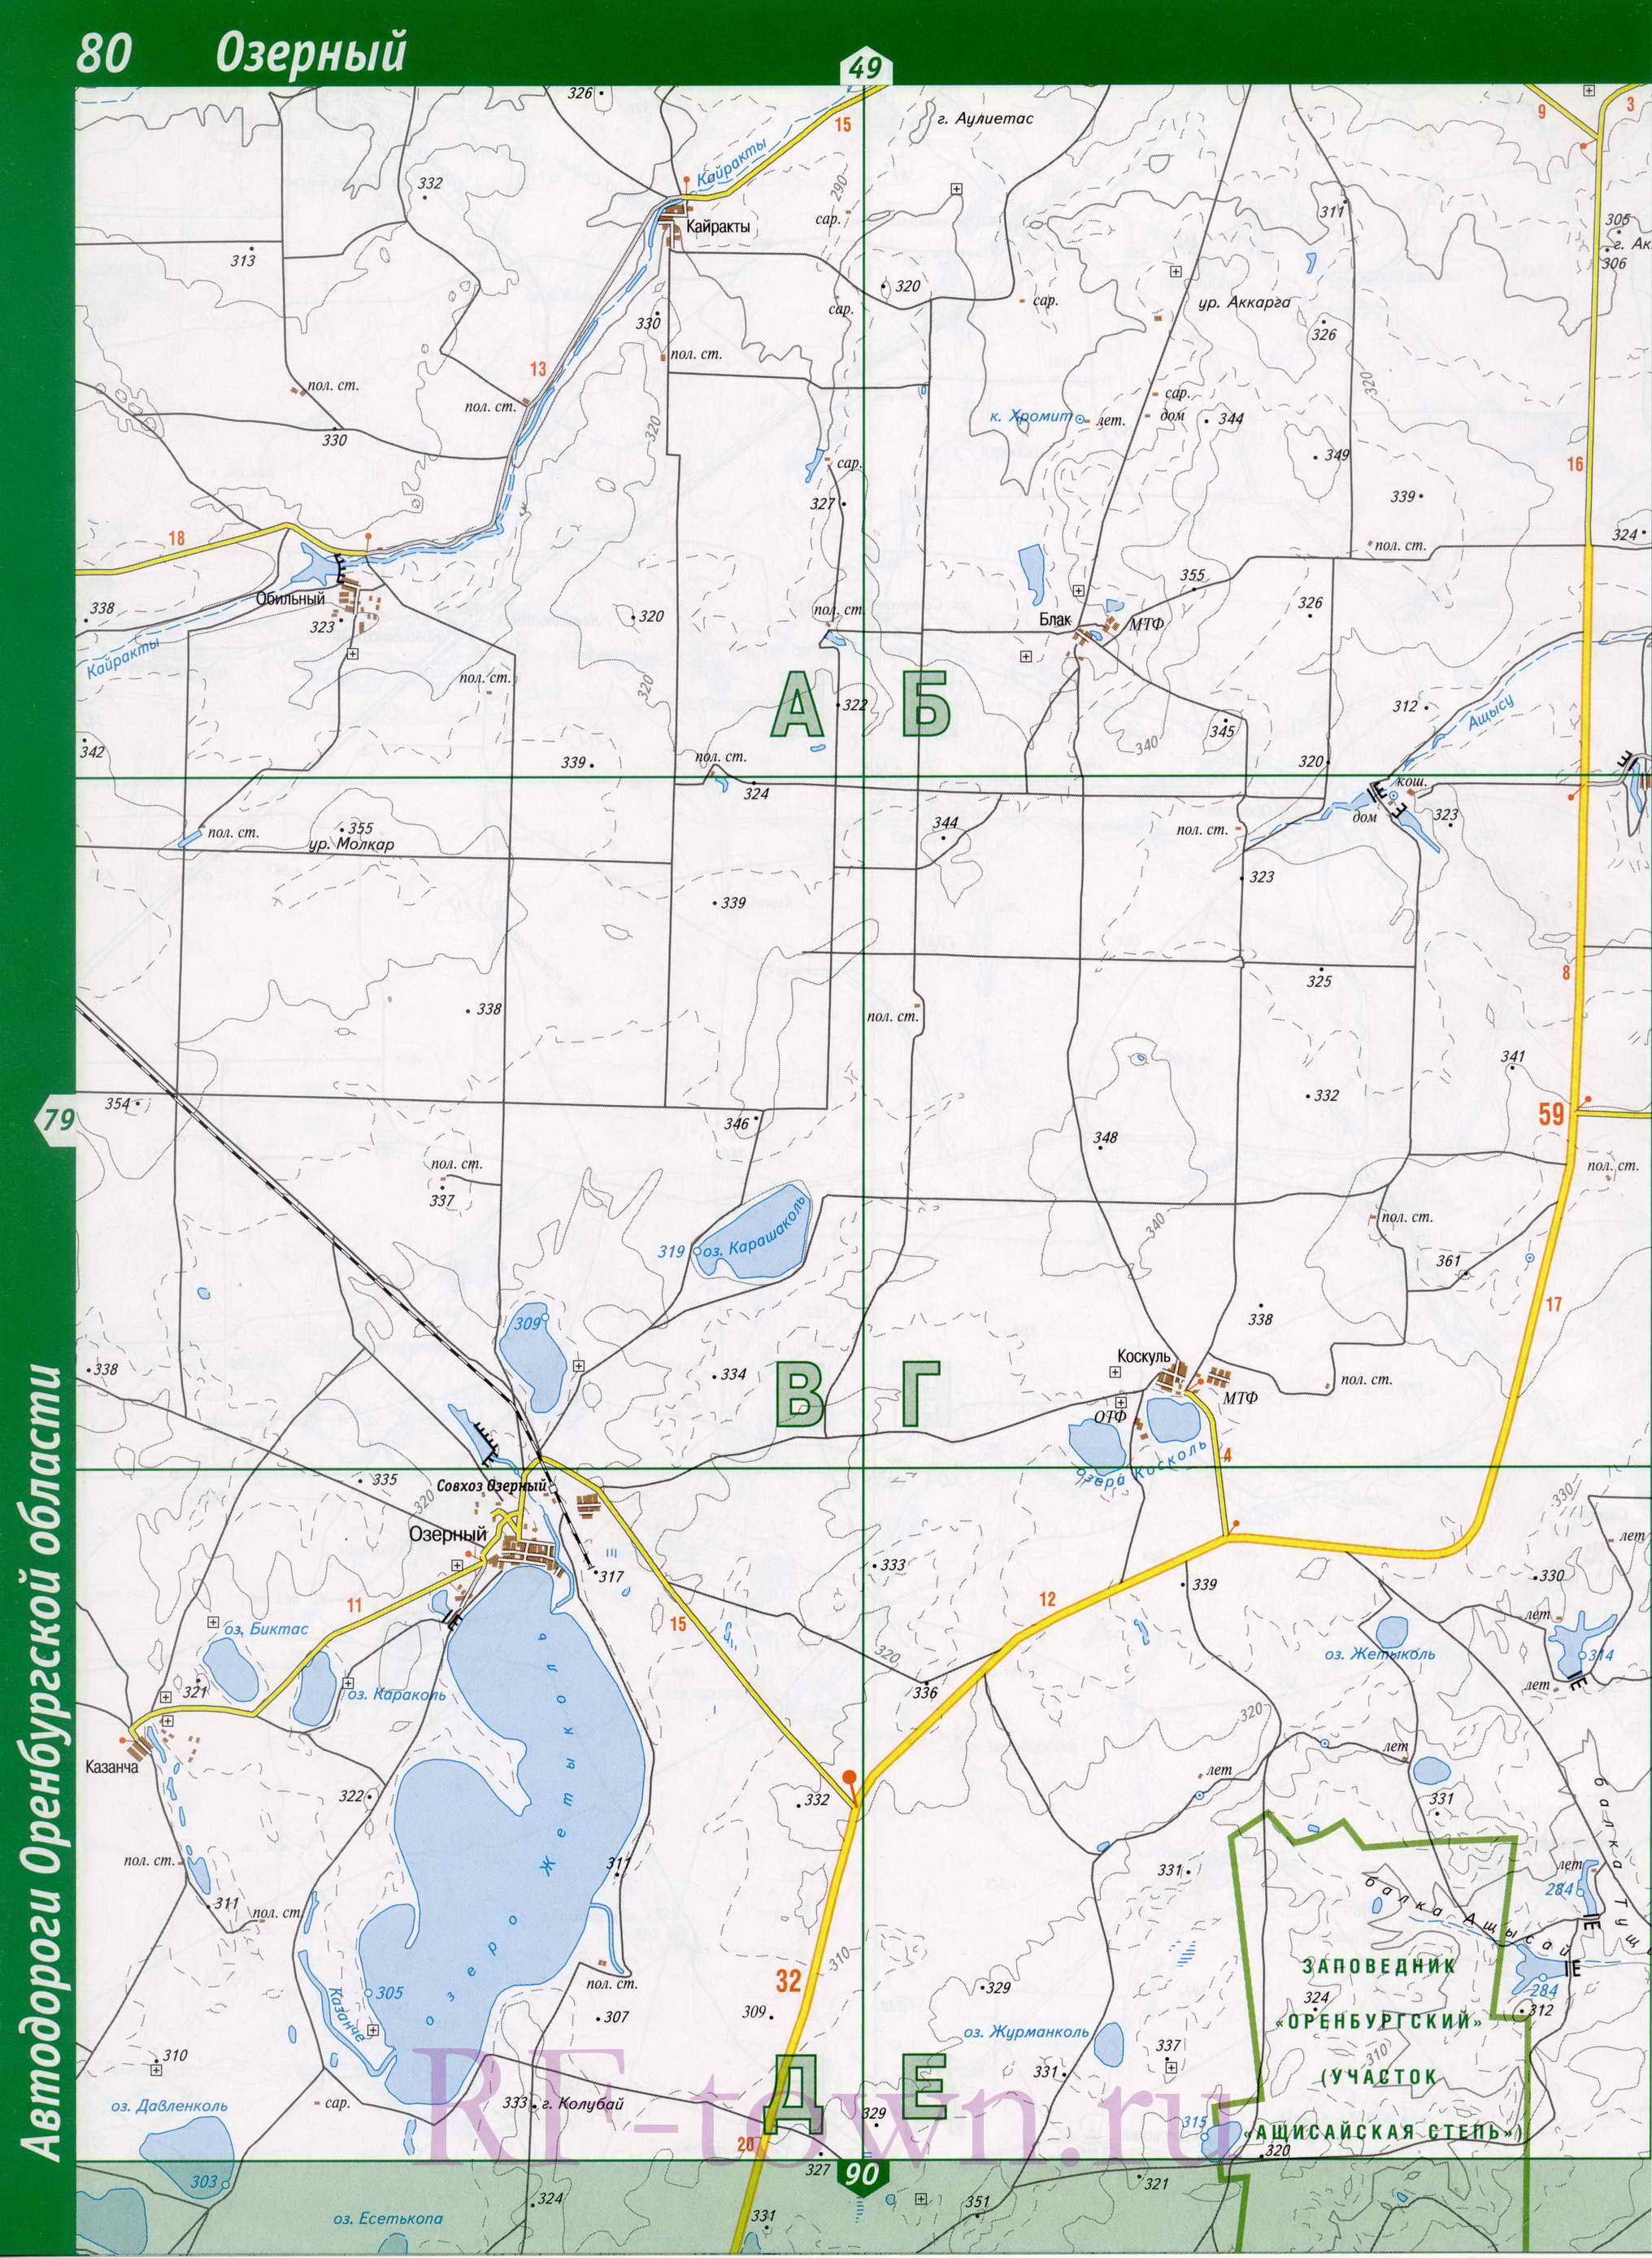 Карта Светлинского района Оренбургской области. Подробная карта - Светлинский район, B0 - 